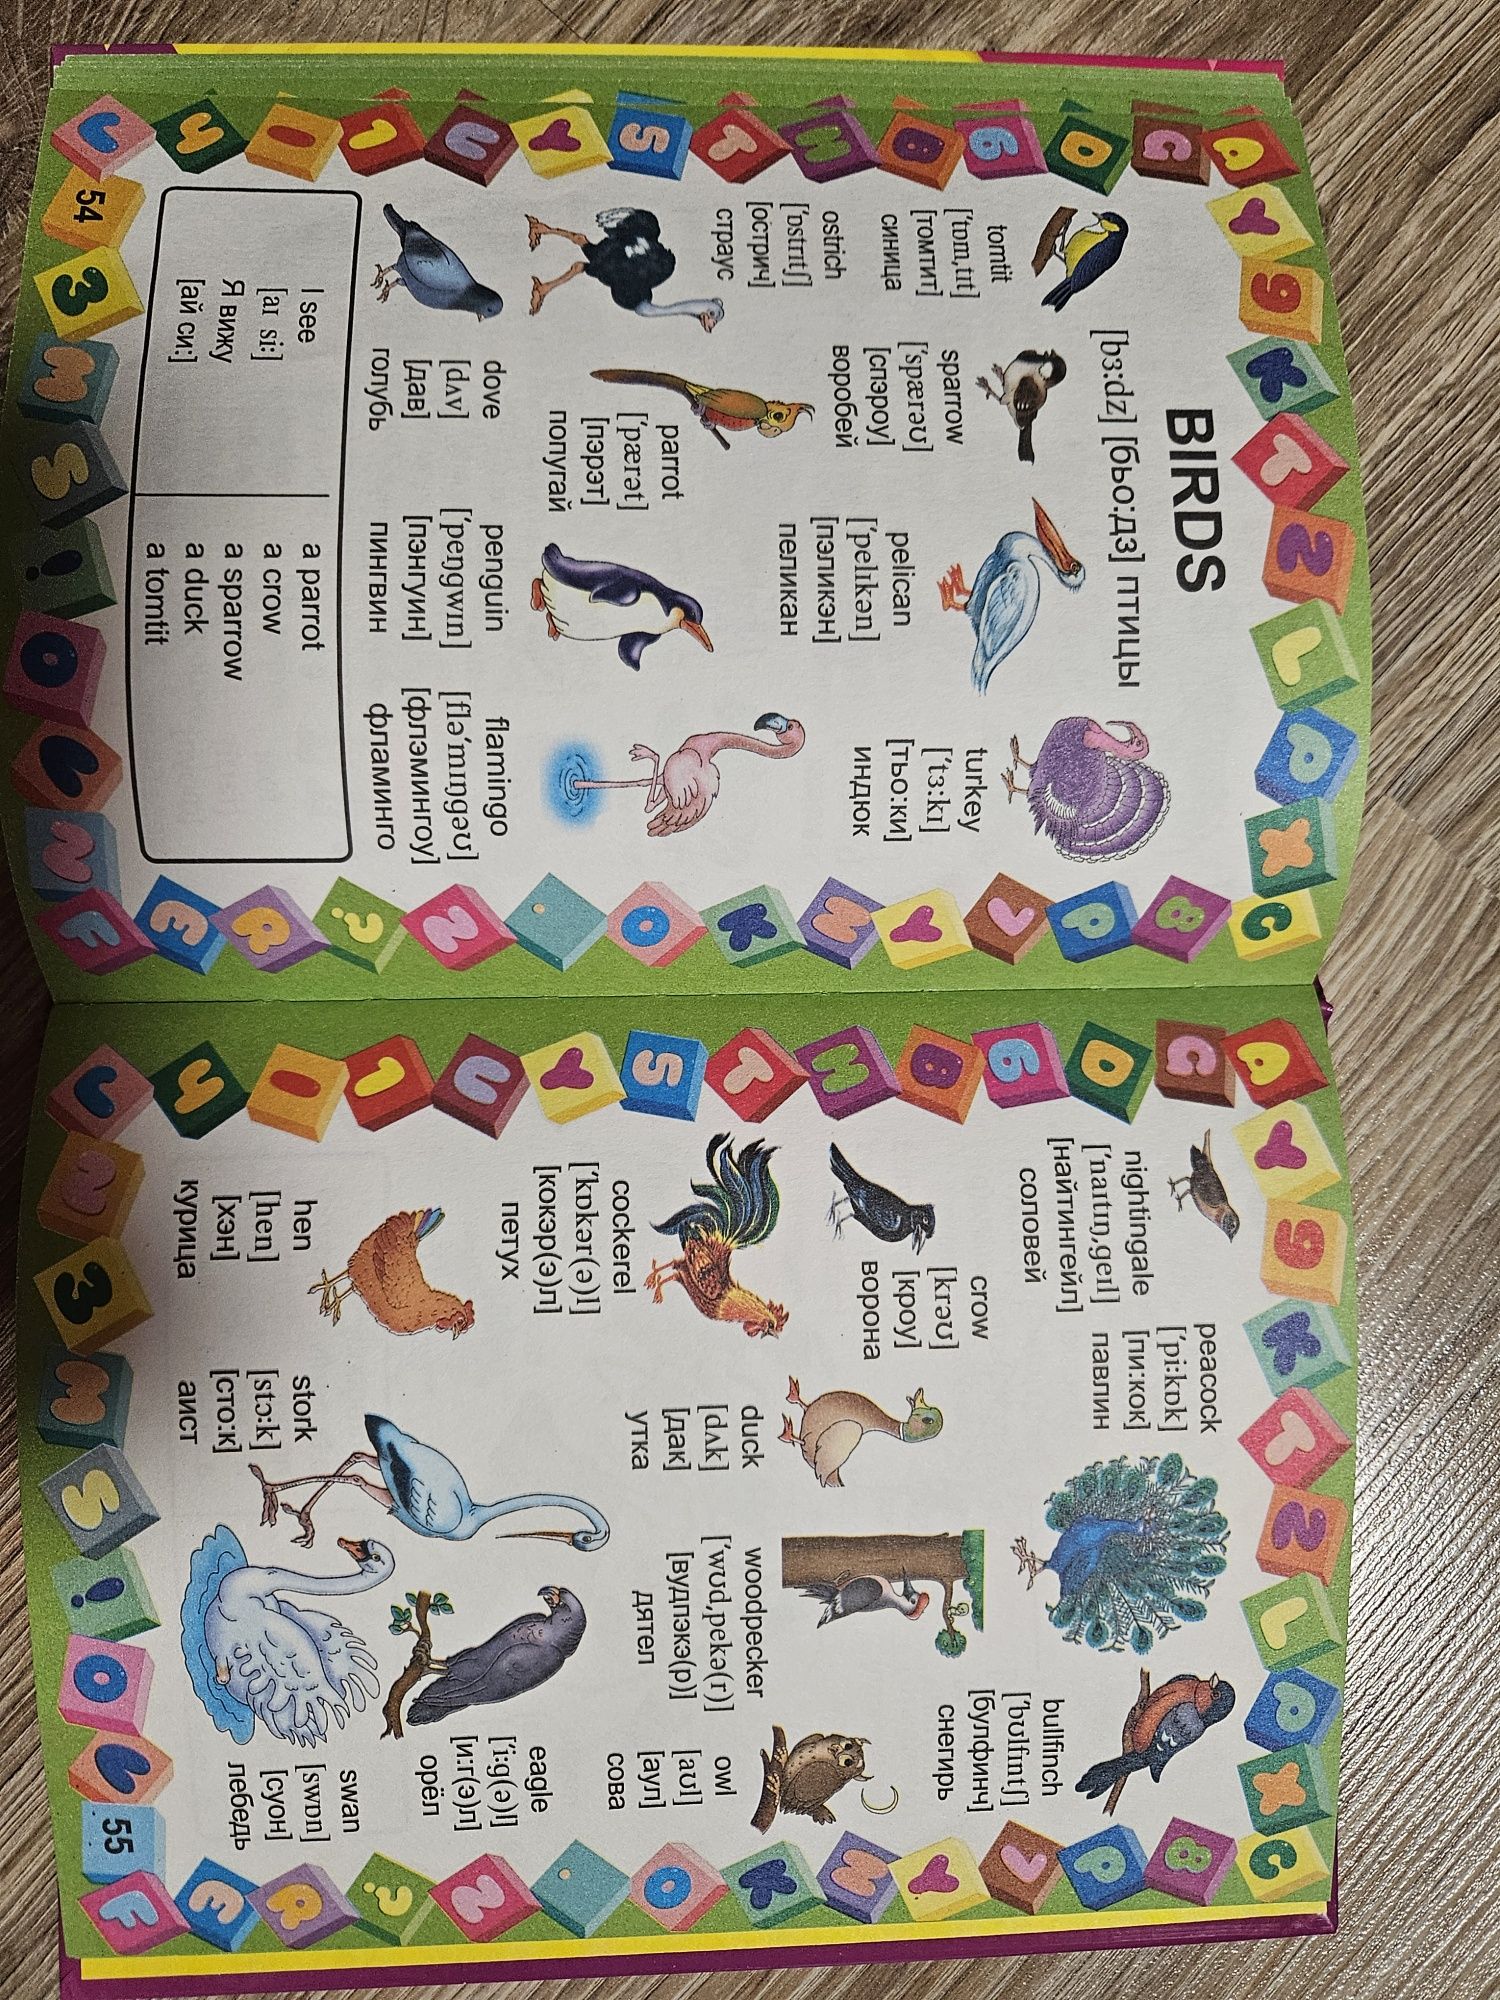 English для детей